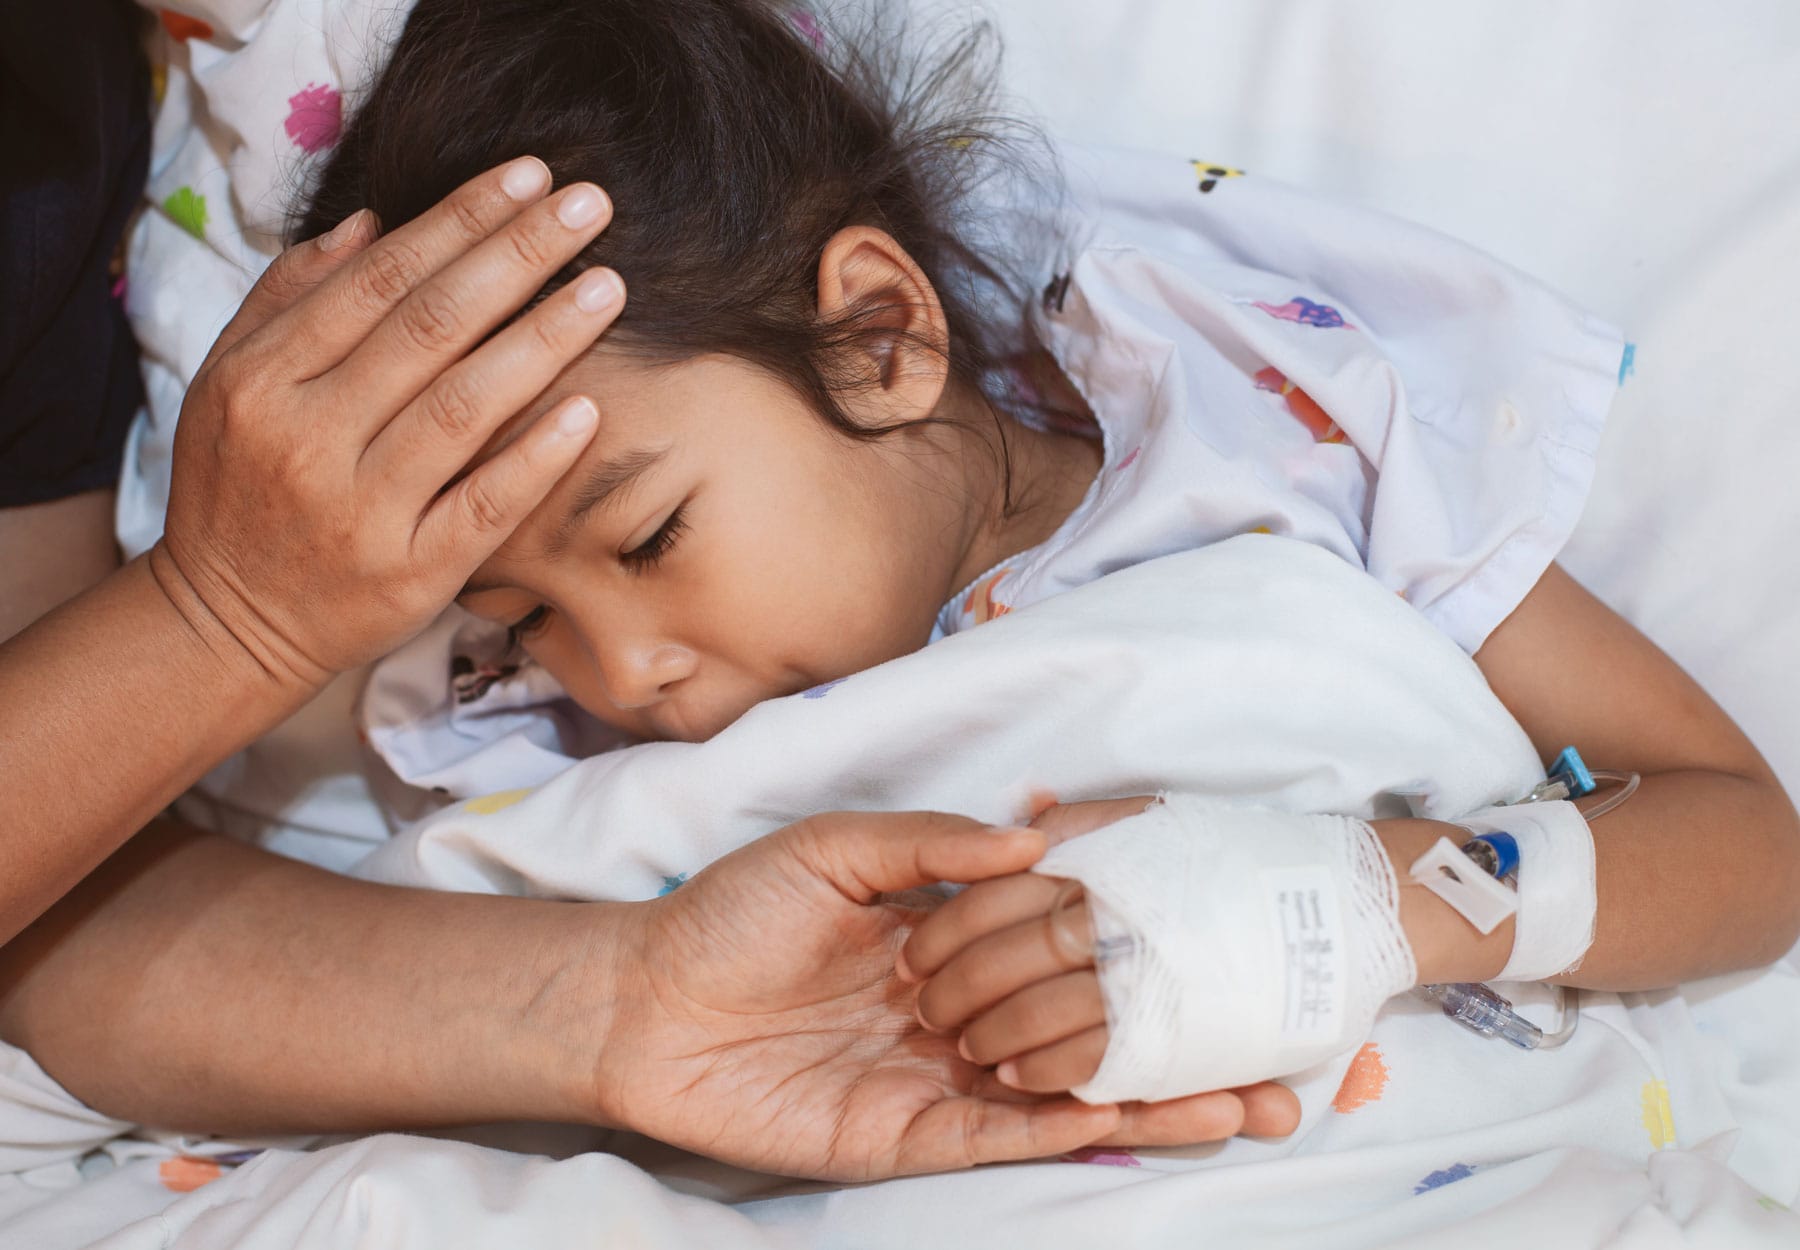 Ein Kind im Krankenhaus wird medizinisch versorgt und bertreut